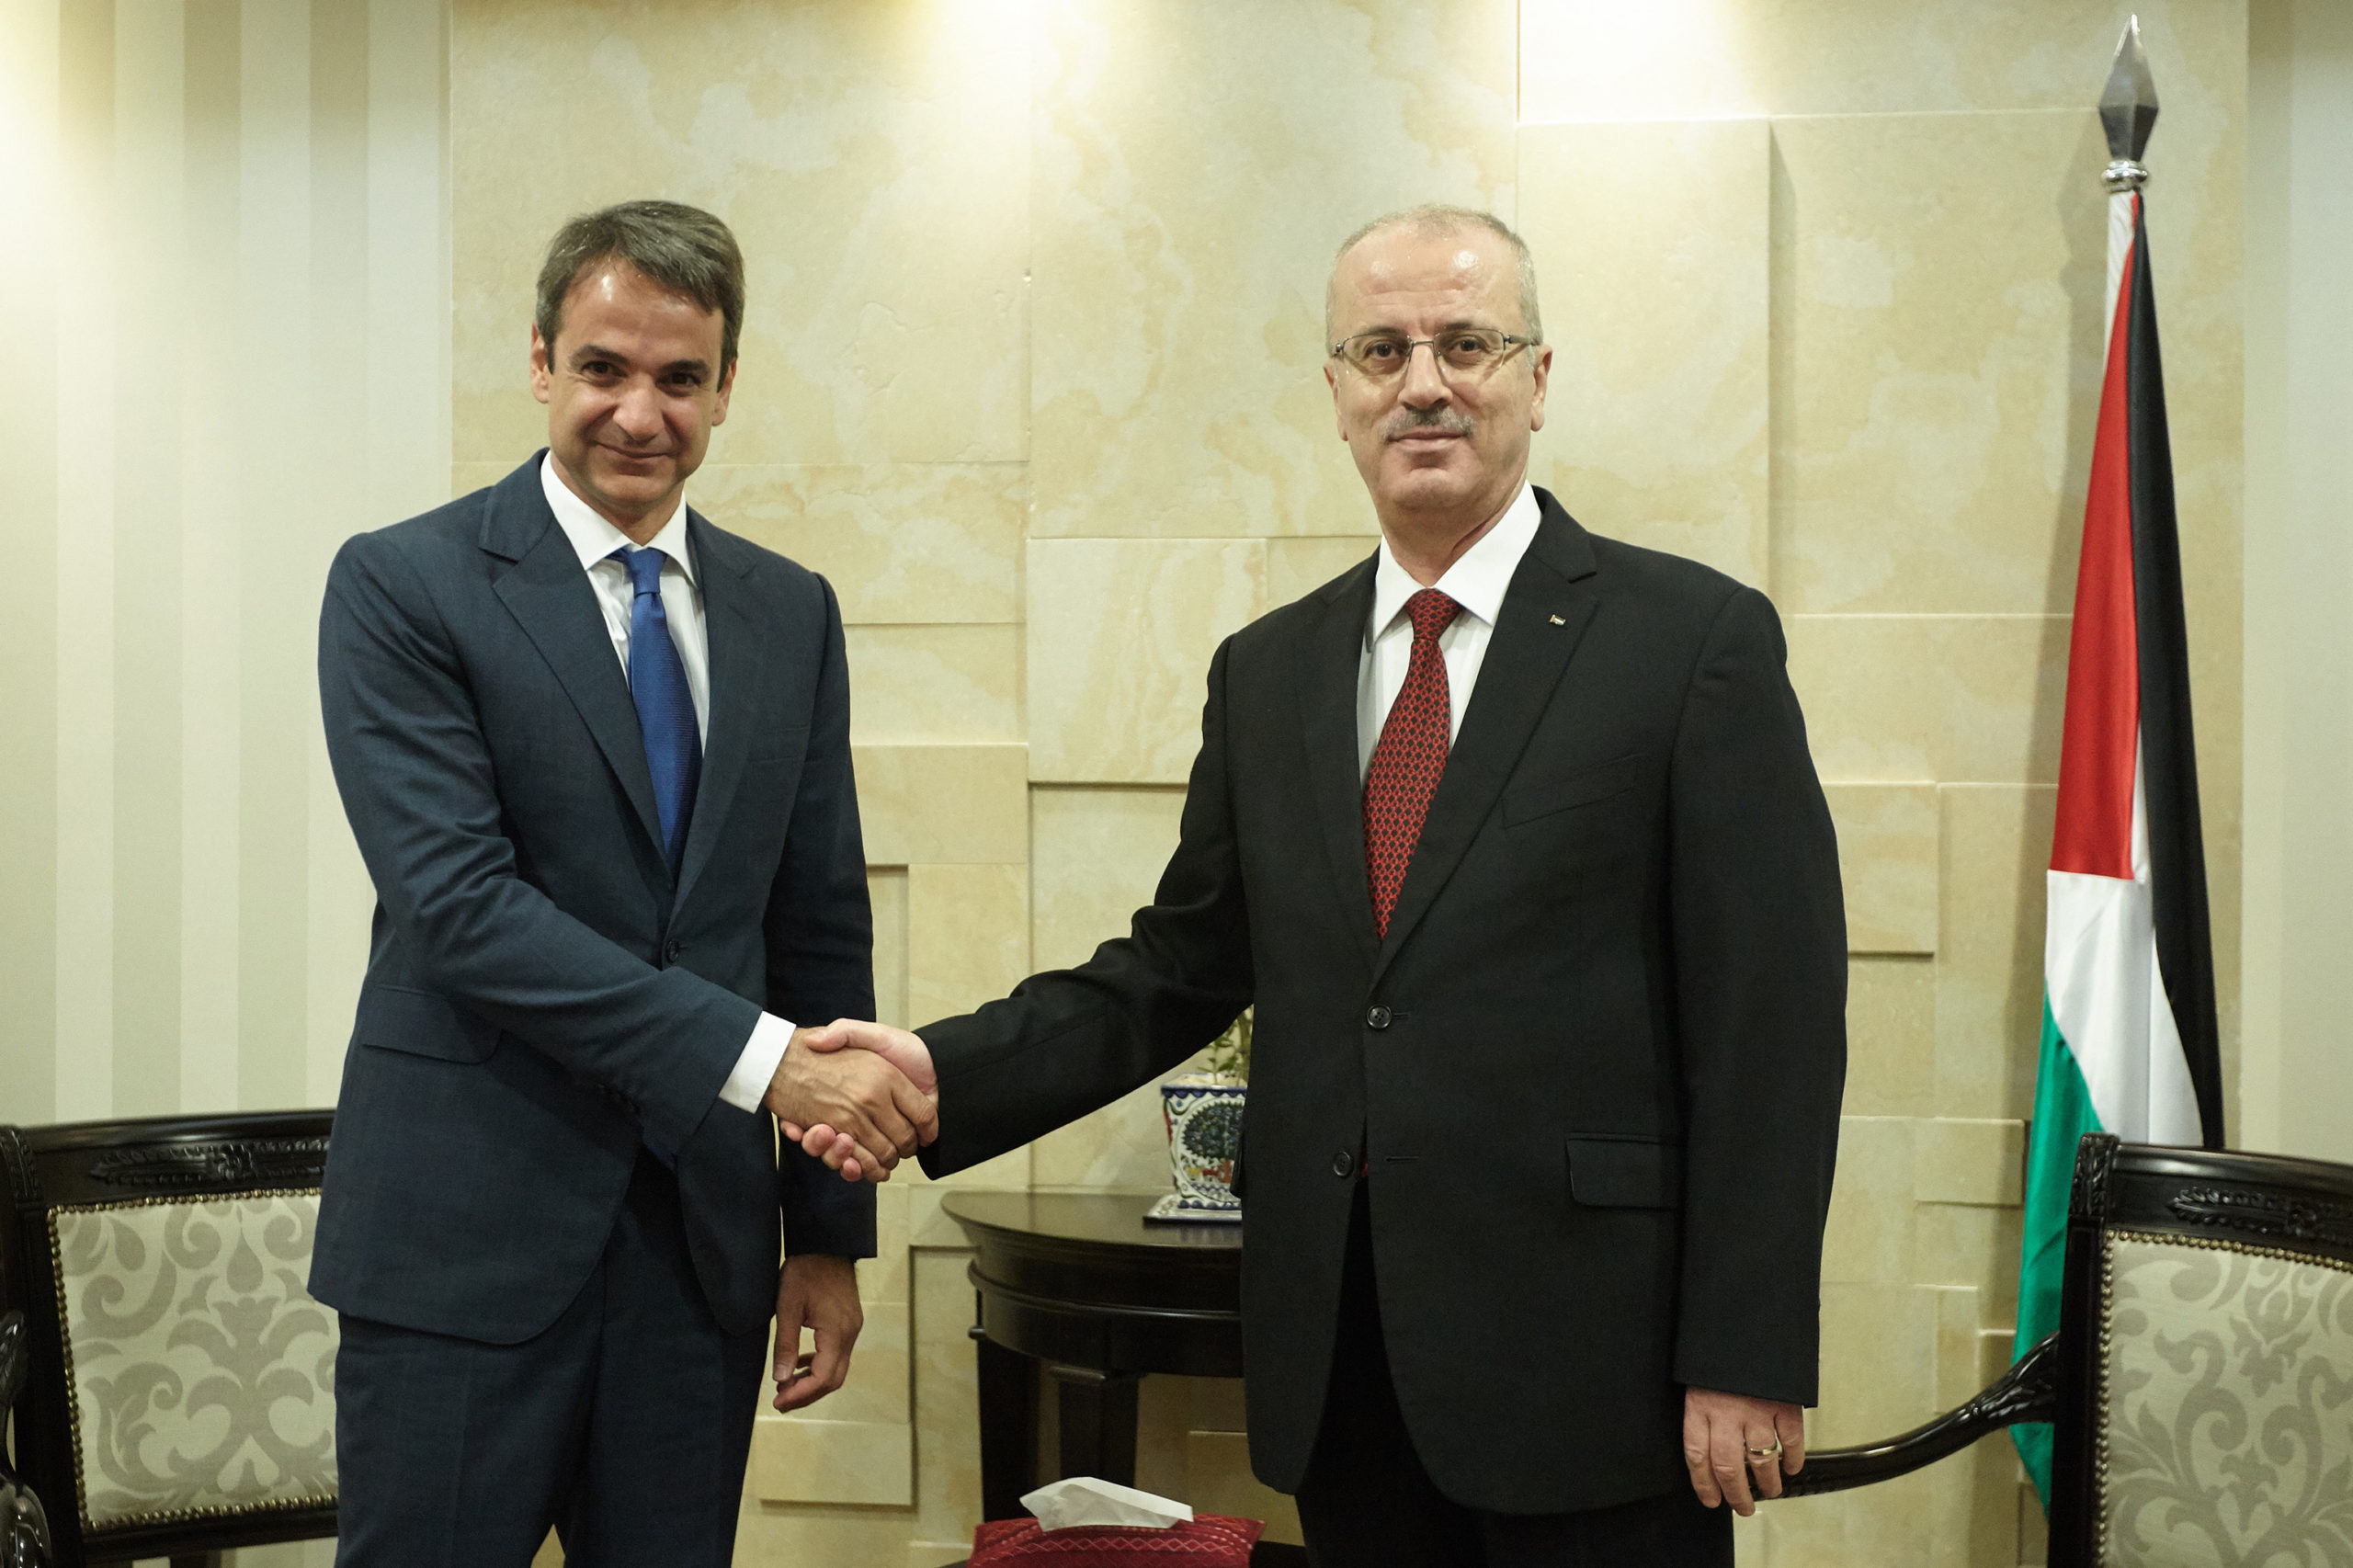 Τι συζήτησε ο Μητσοτάκης με τον Πρωθυπουργό της Παλαιστίνης – ΒΙΝΤΕΟ